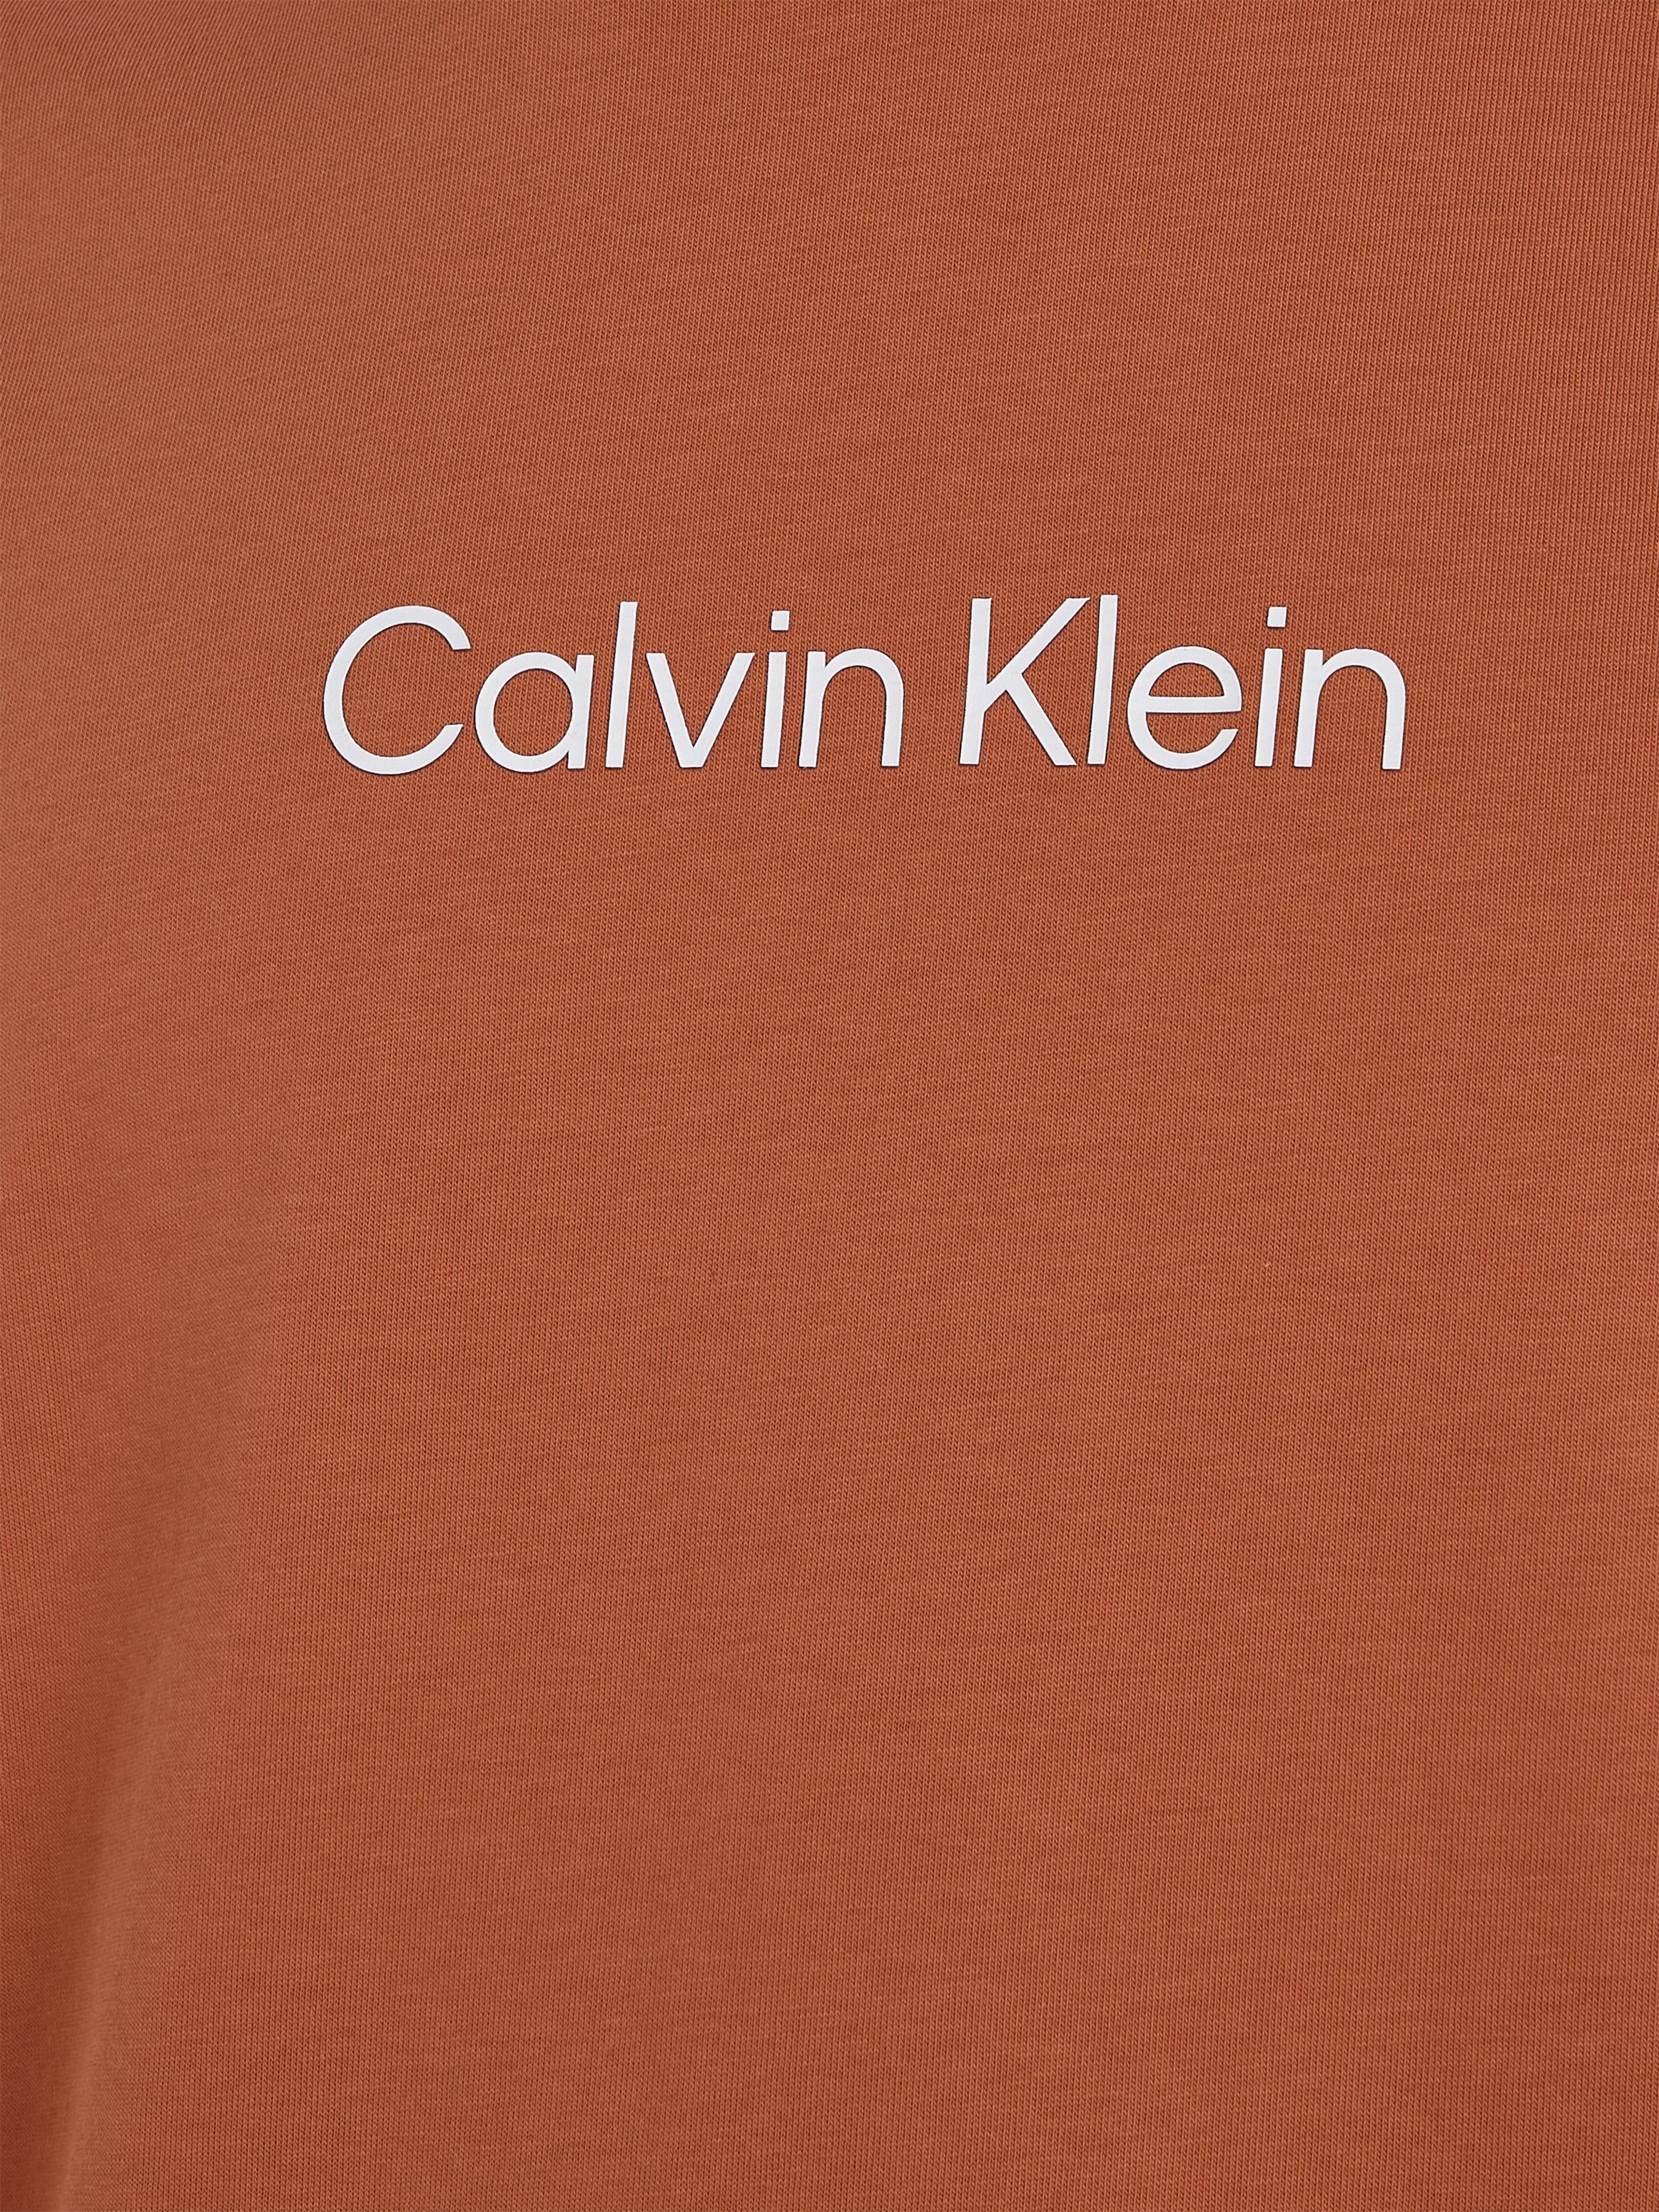 Calvin Klein Sun COMFORT aufgedrucktem mit HERO Markenlabel Copper T-SHIRT T-Shirt LOGO